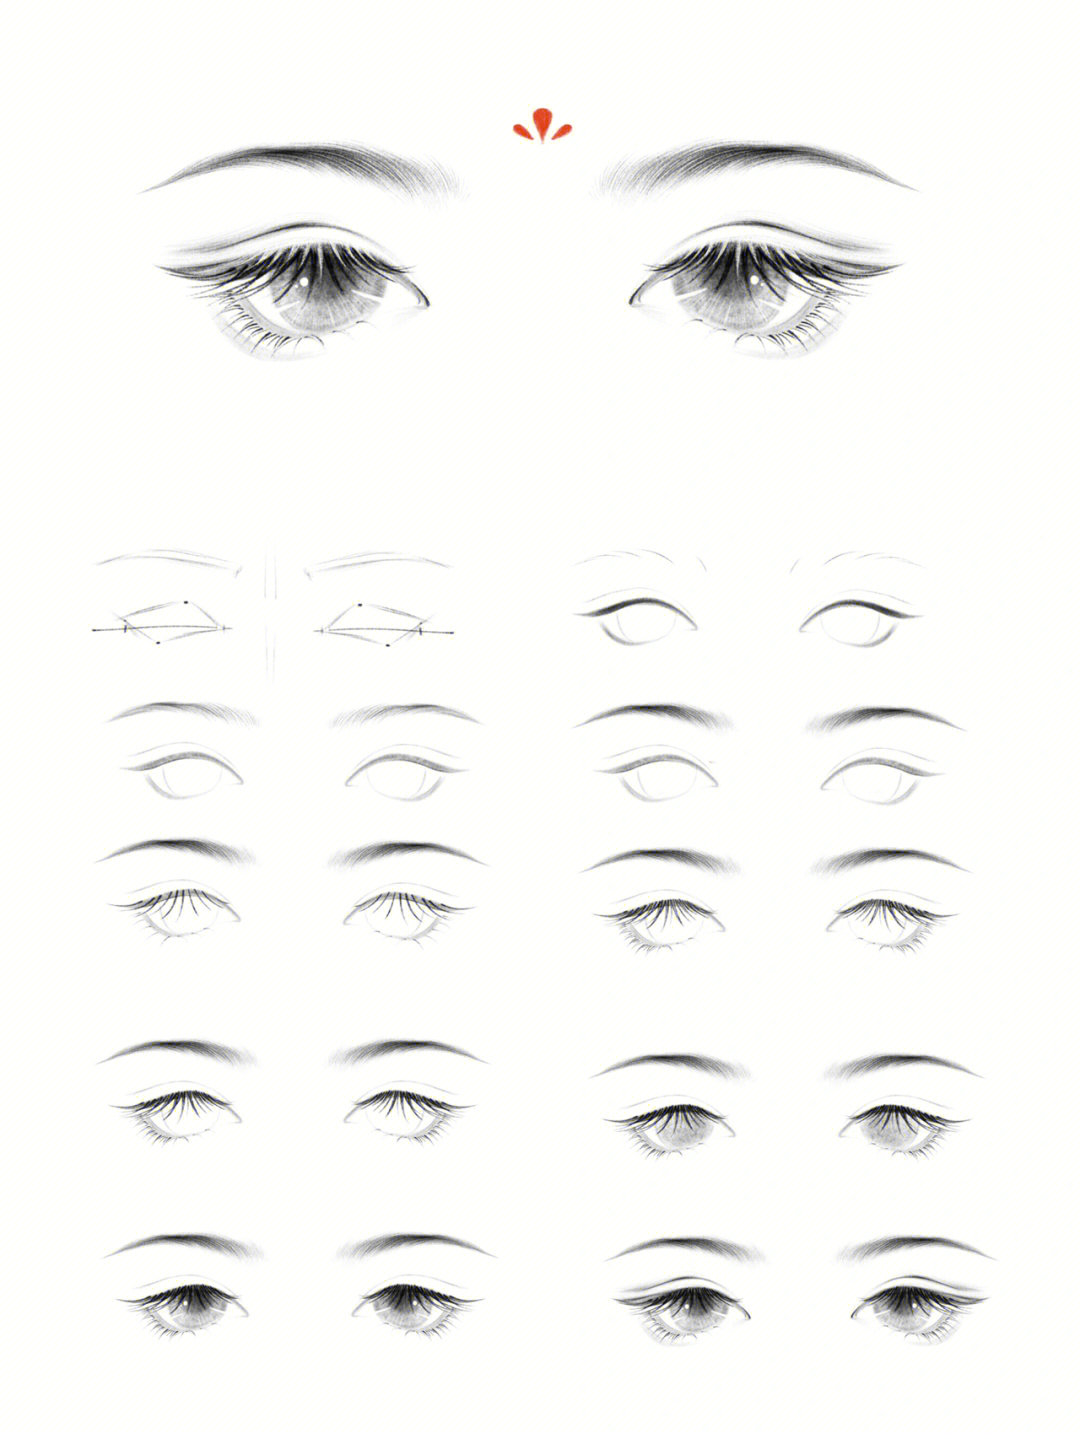 眼睛步骤教程1如何画一个正面眼睛